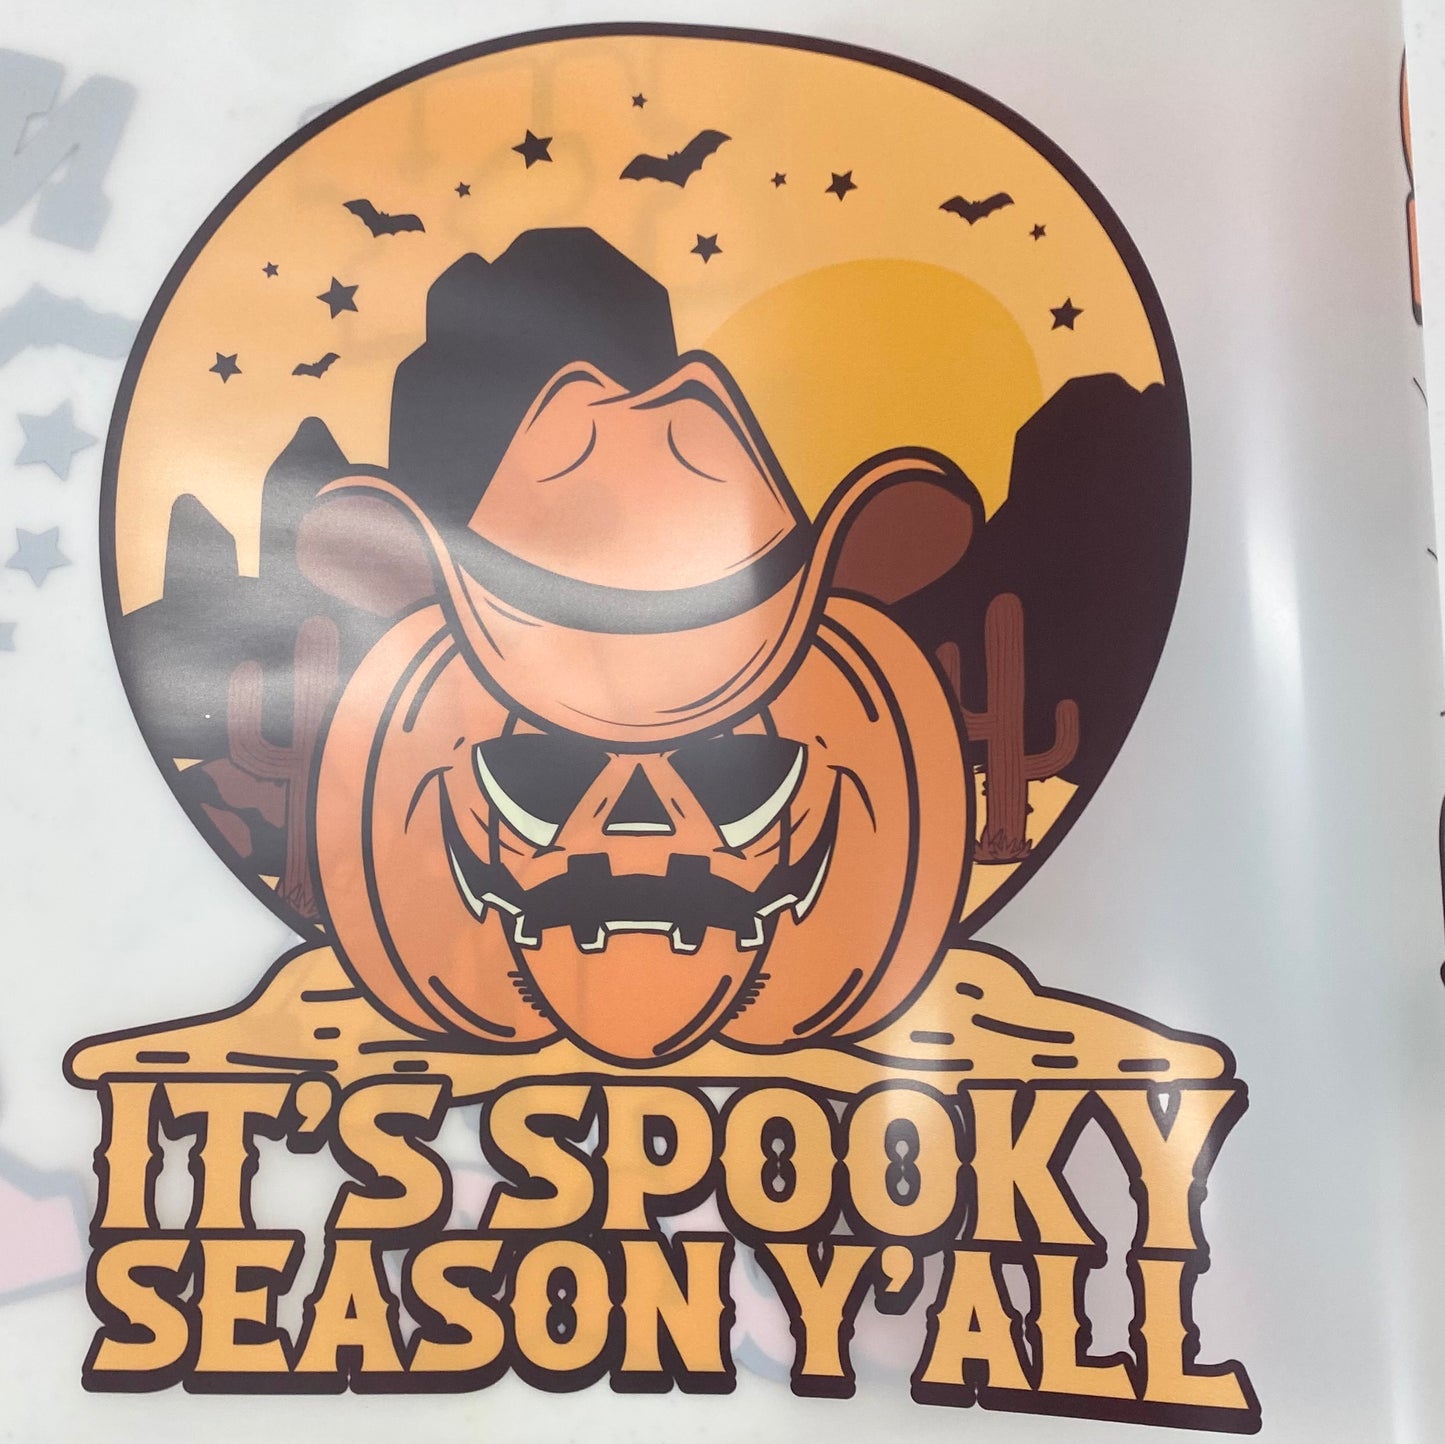 It's Spooky Season Y'all DTF